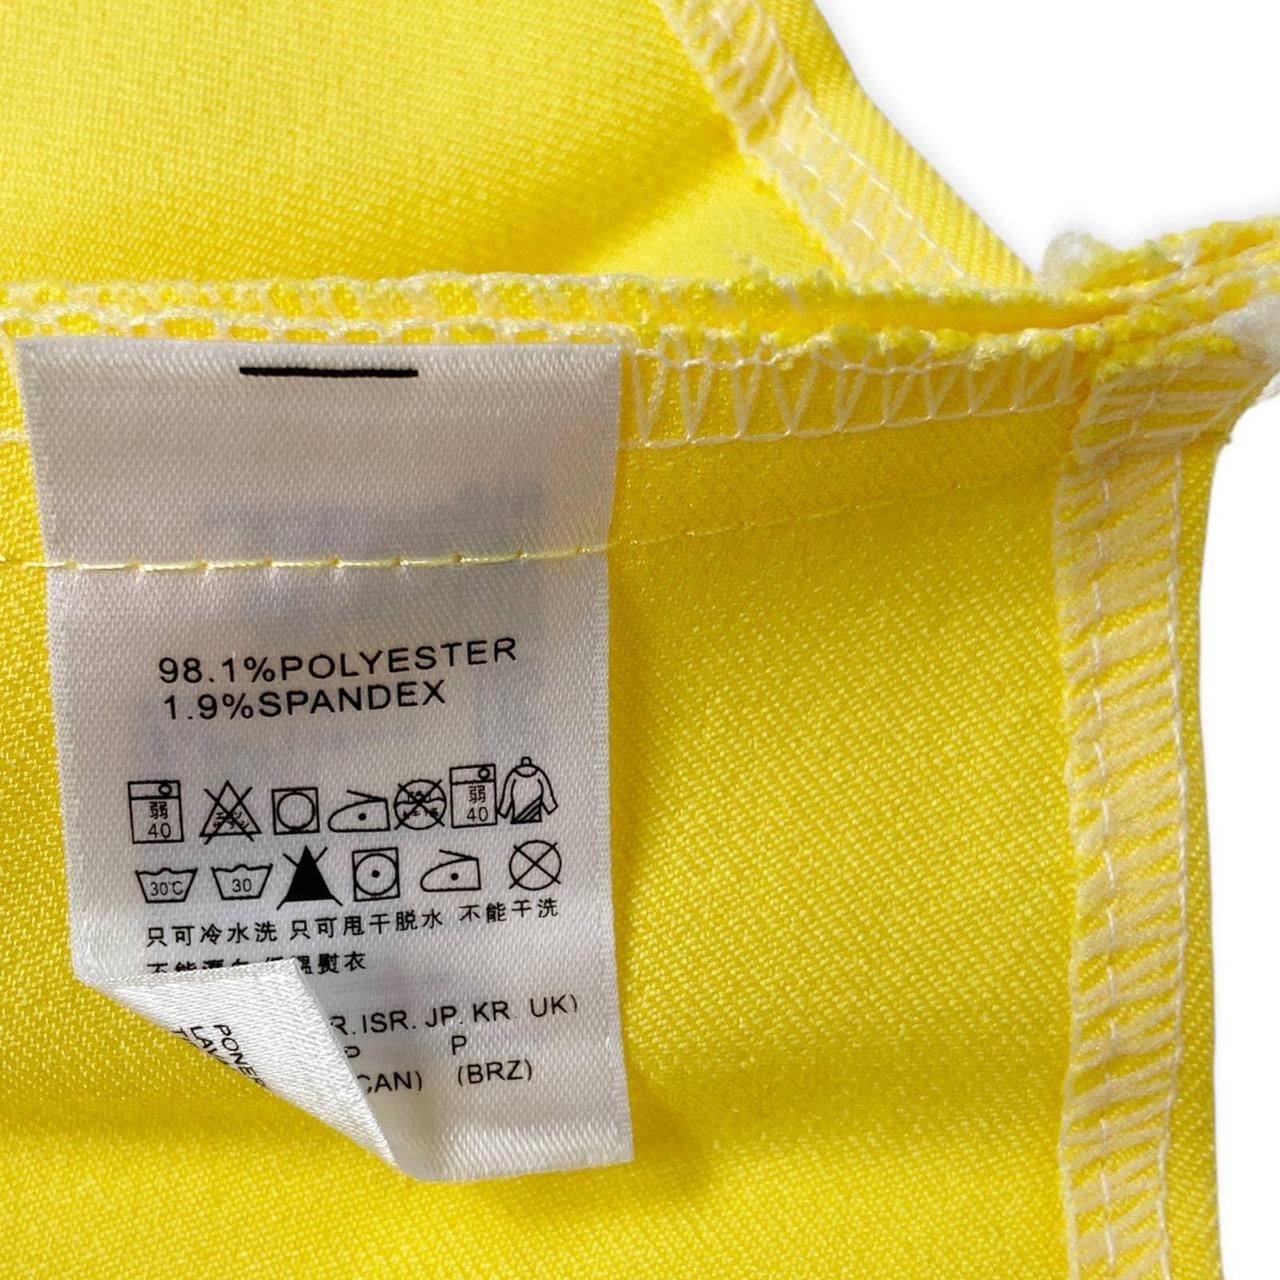 Product Image 4 - Y2K Pleated Tennis Skirt 🍒

Y2K